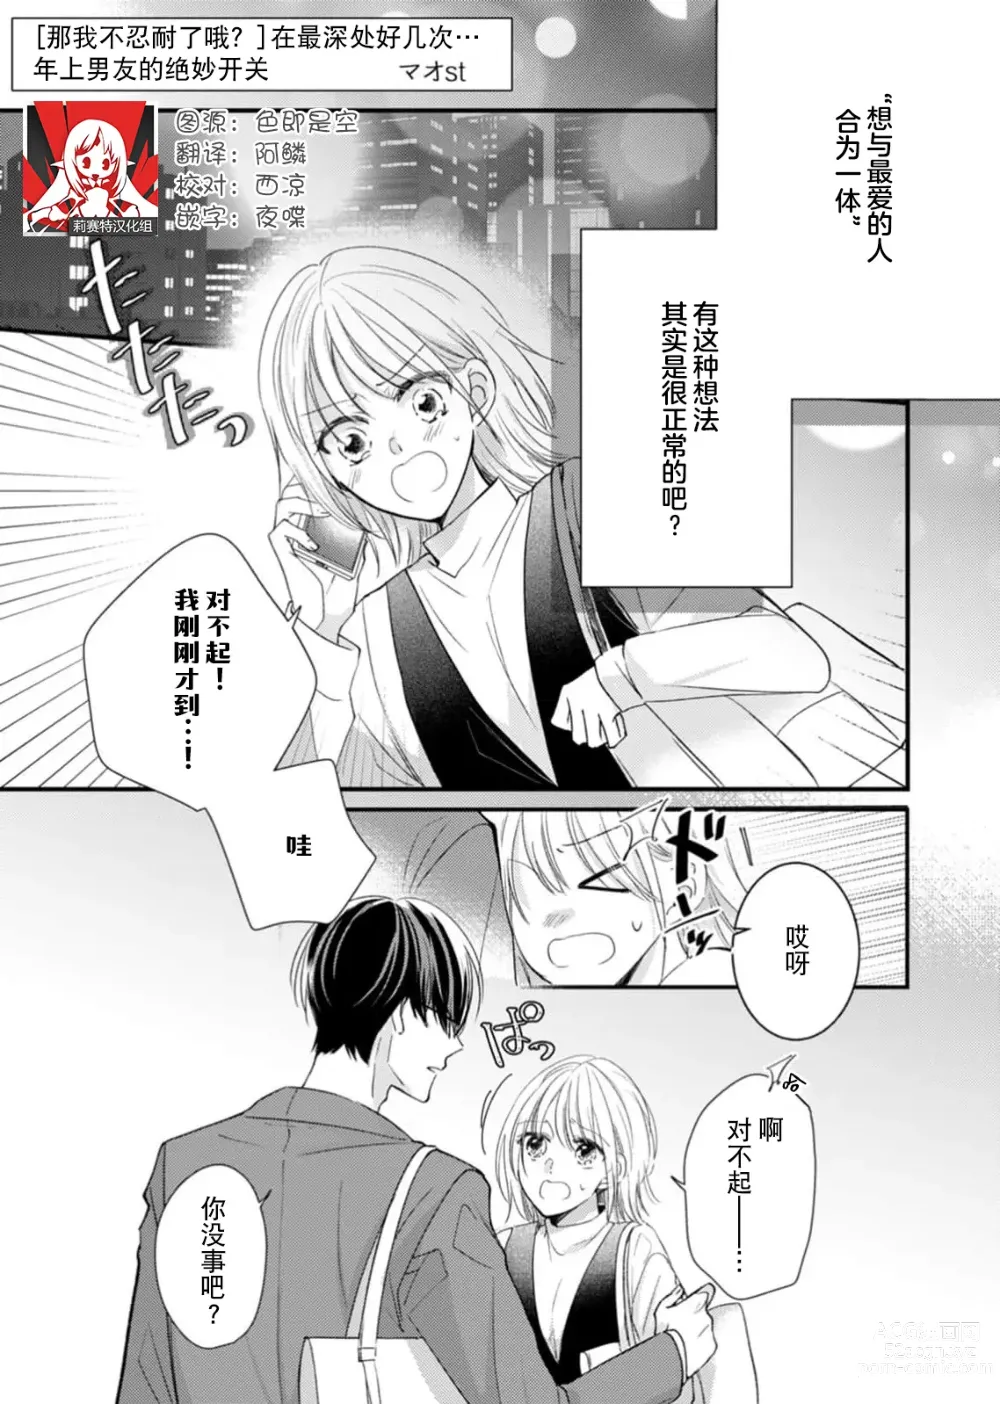 Page 1 of manga 「…那我不忍耐了哦？」在最深处好几次…年上男友的绝妙开关